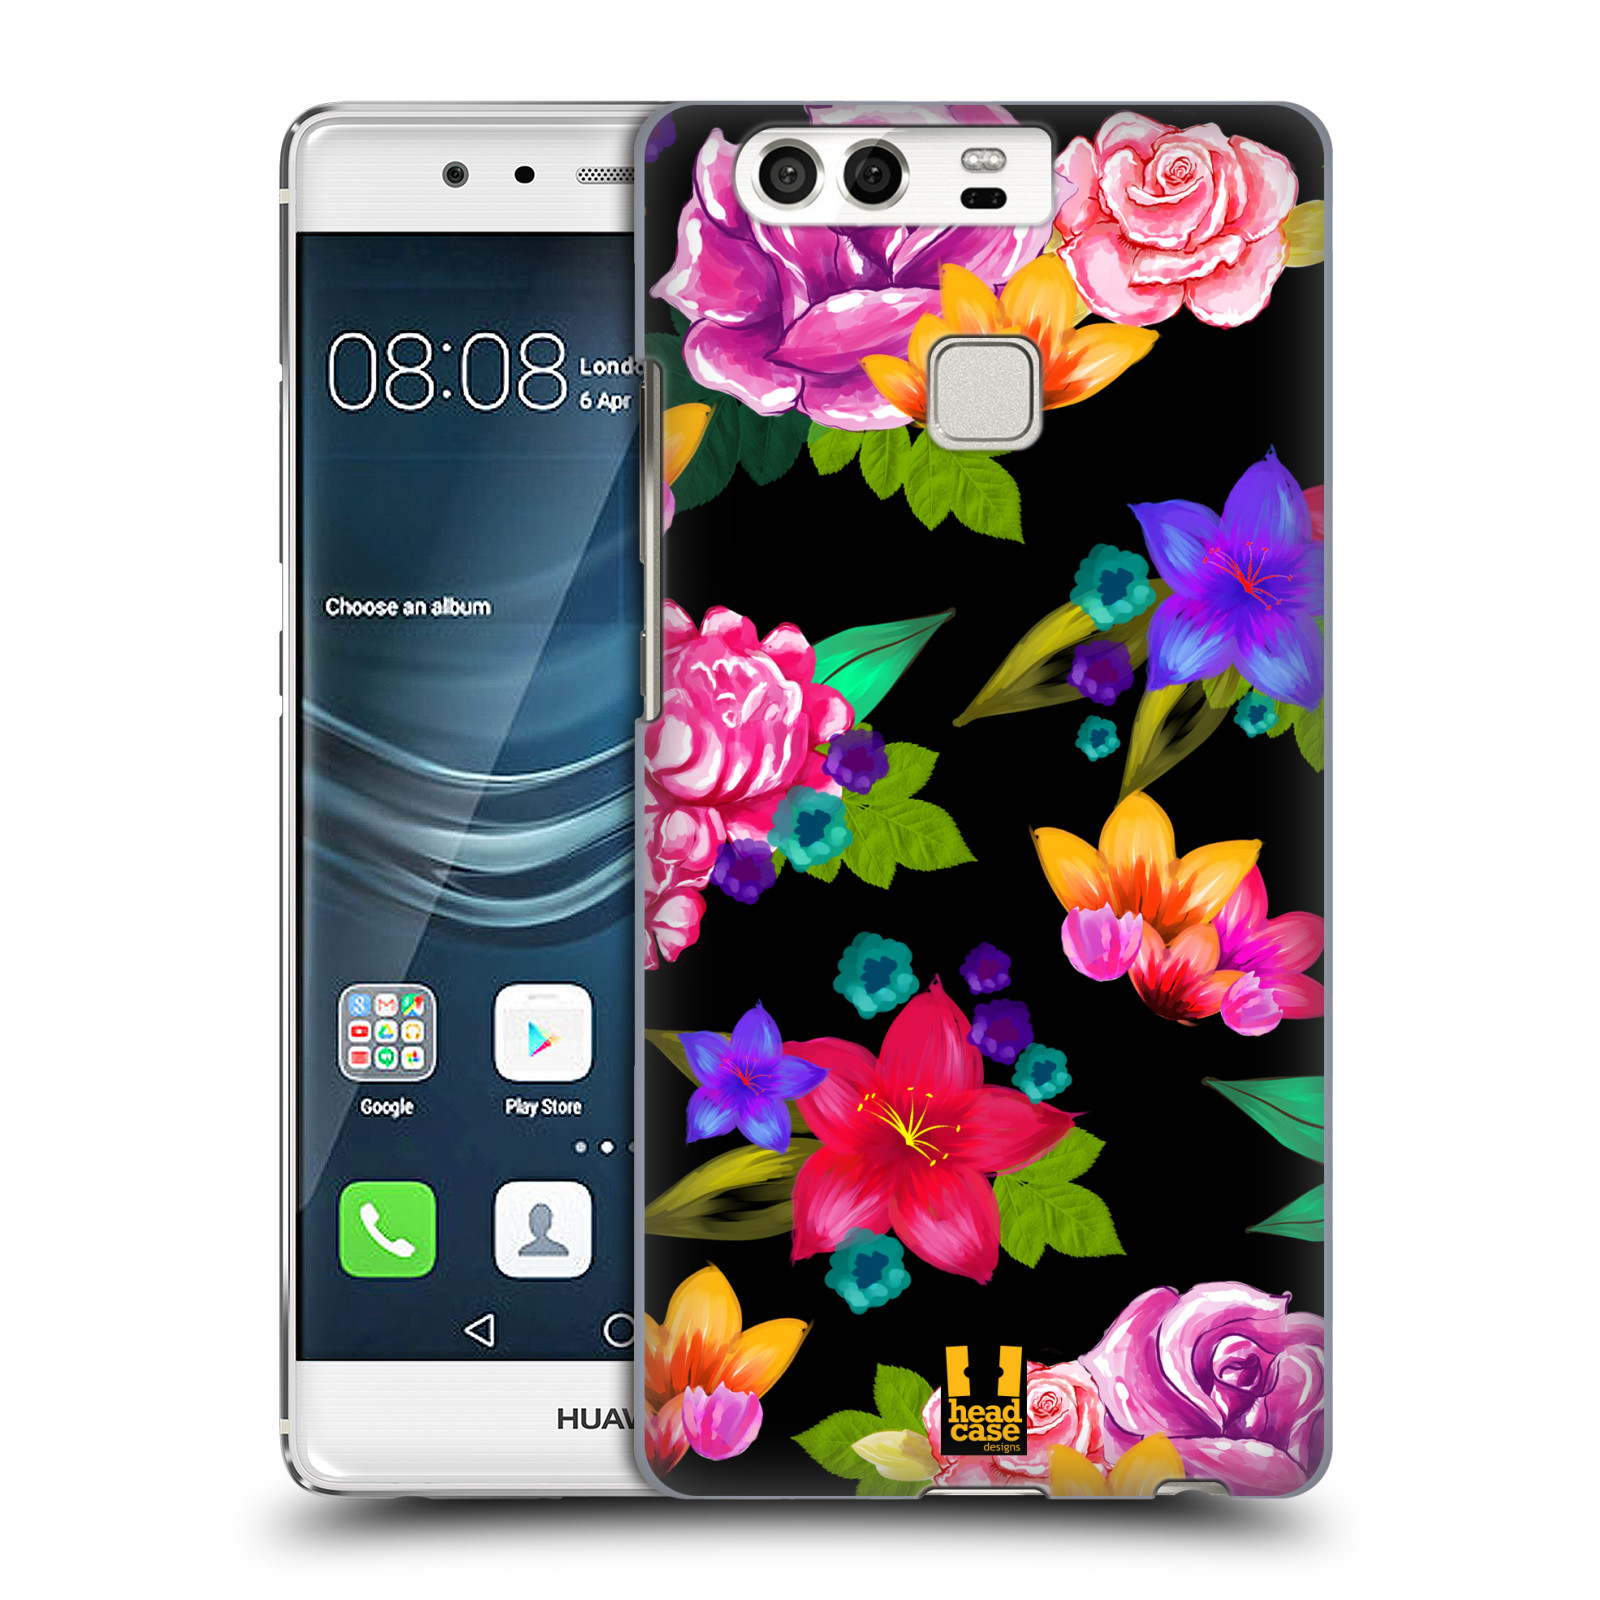 HEAD CASE plastový obal na mobil Huawei P9 / P9 DUAL SIM vzor Malované květiny barevné ČERNÁ